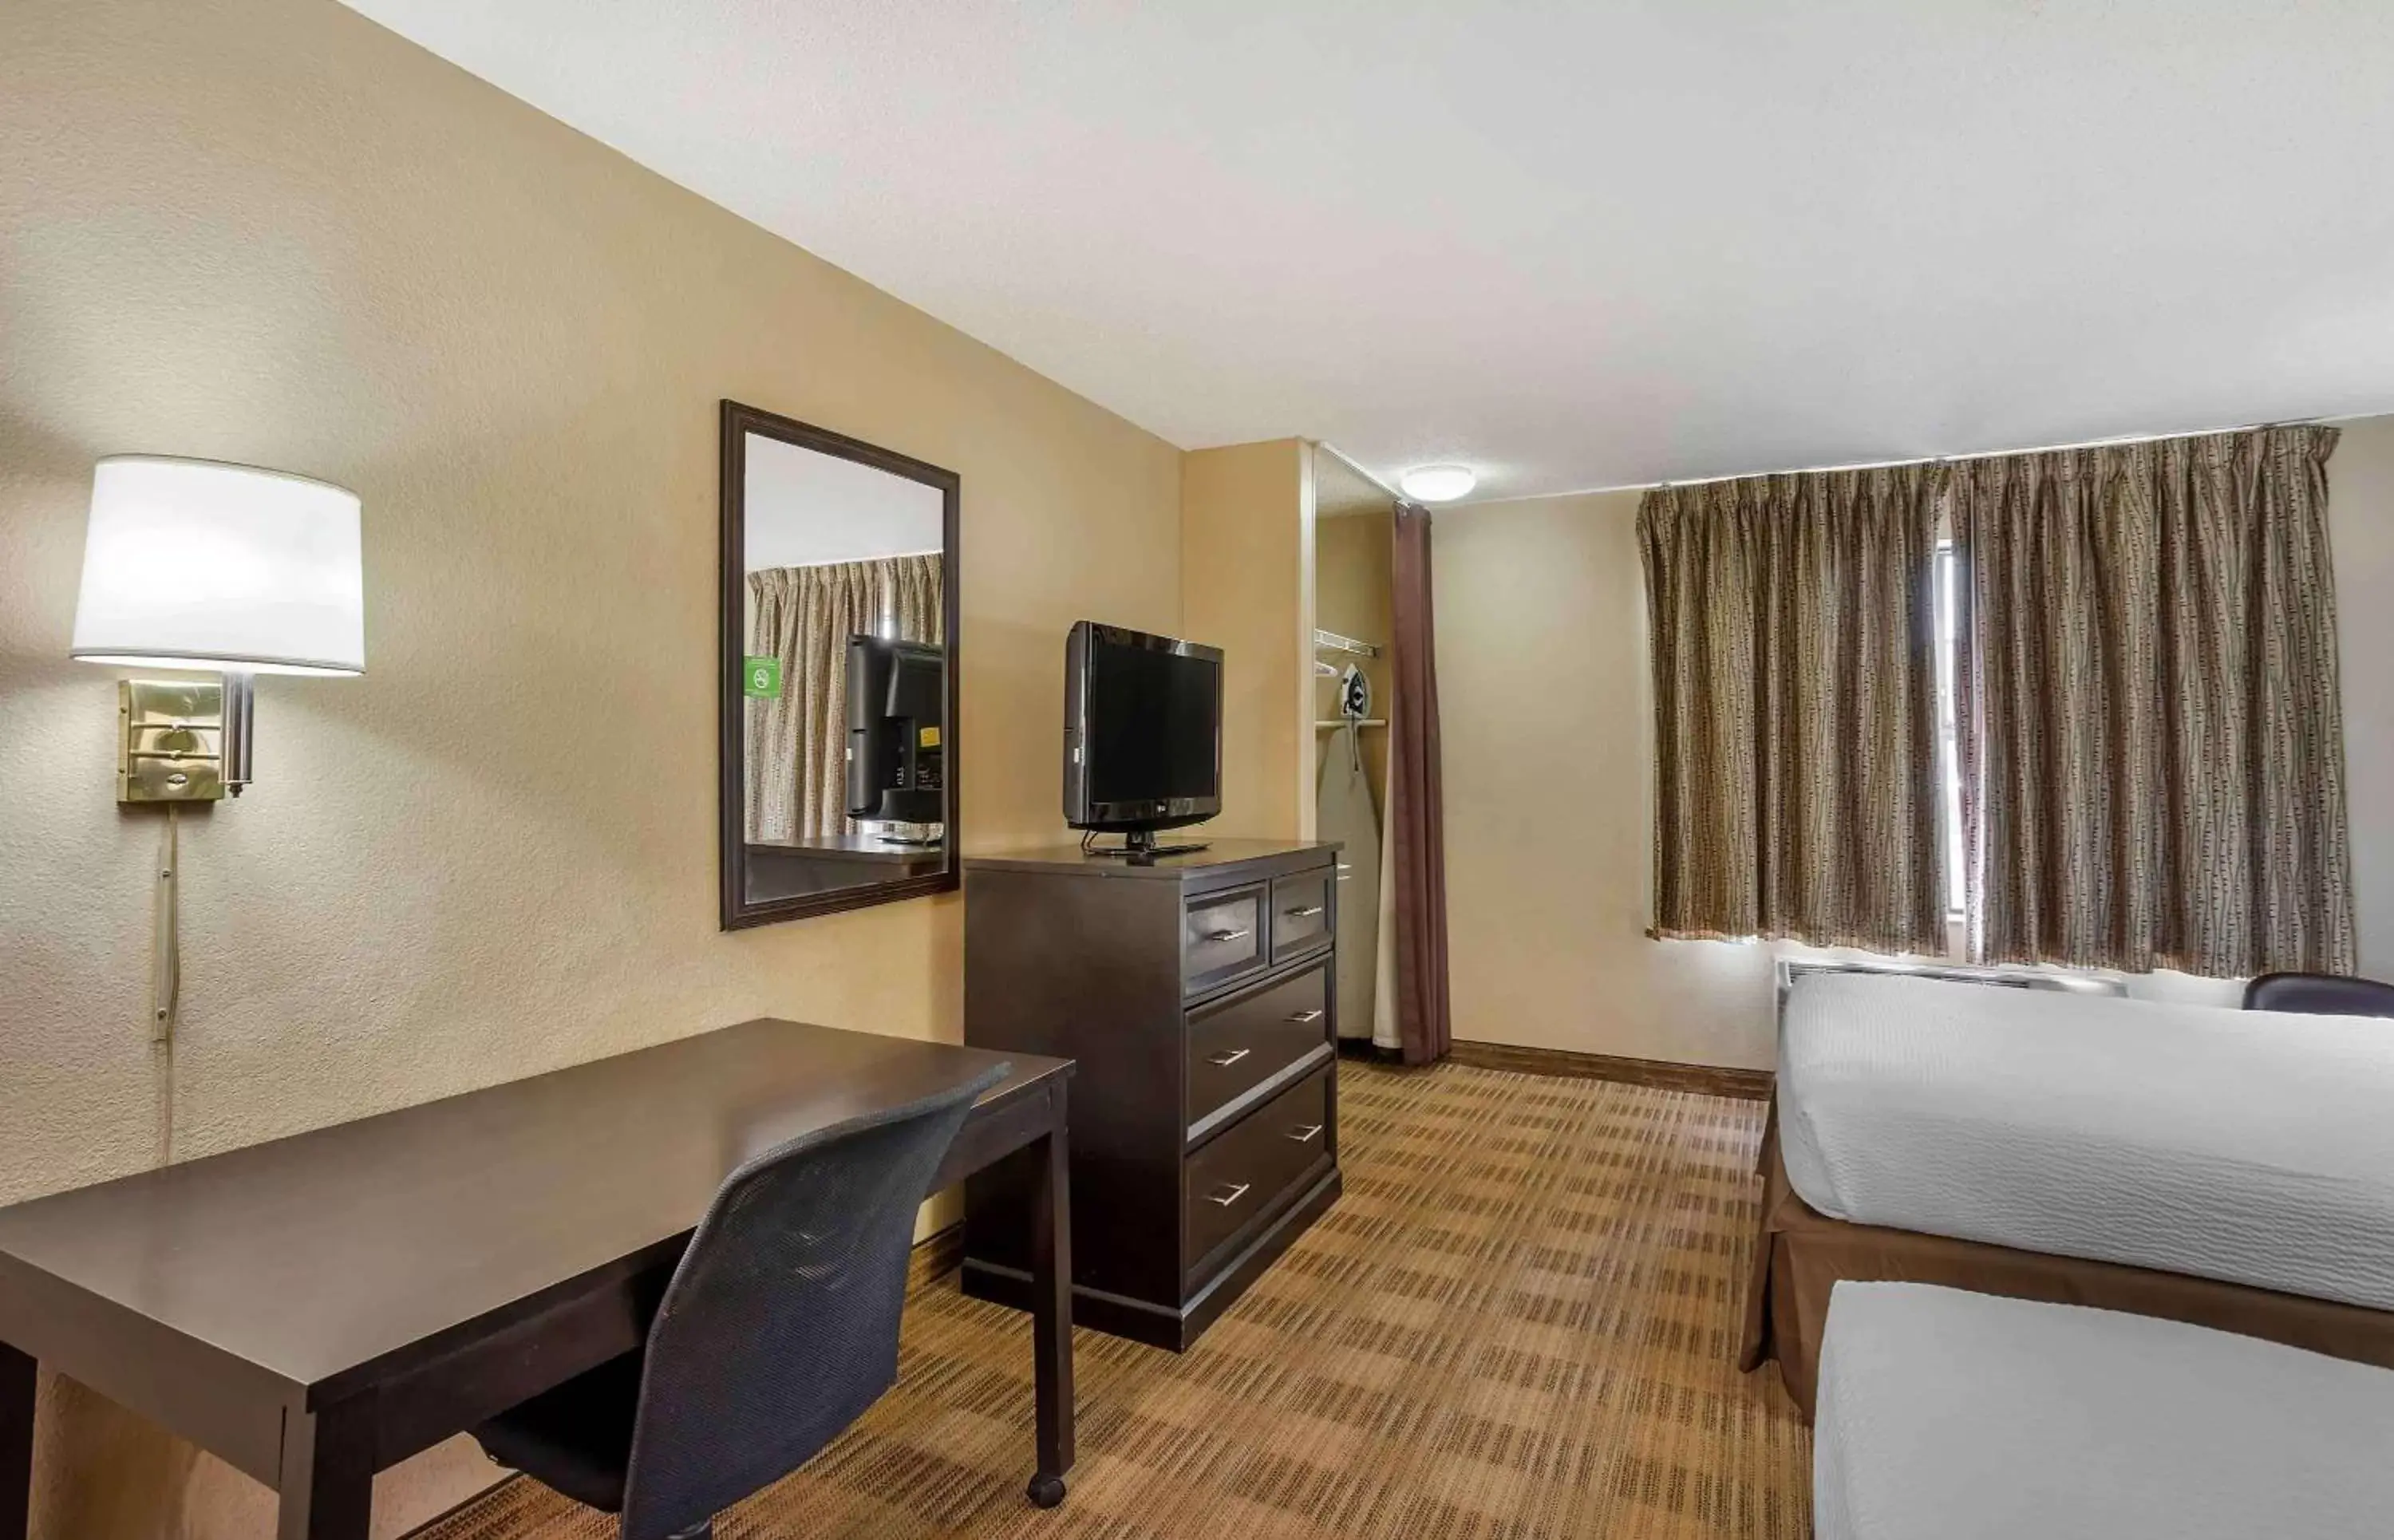 Bedroom, TV/Entertainment Center in Extended Stay America Suites - Philadelphia - Horsham - Welsh Rd